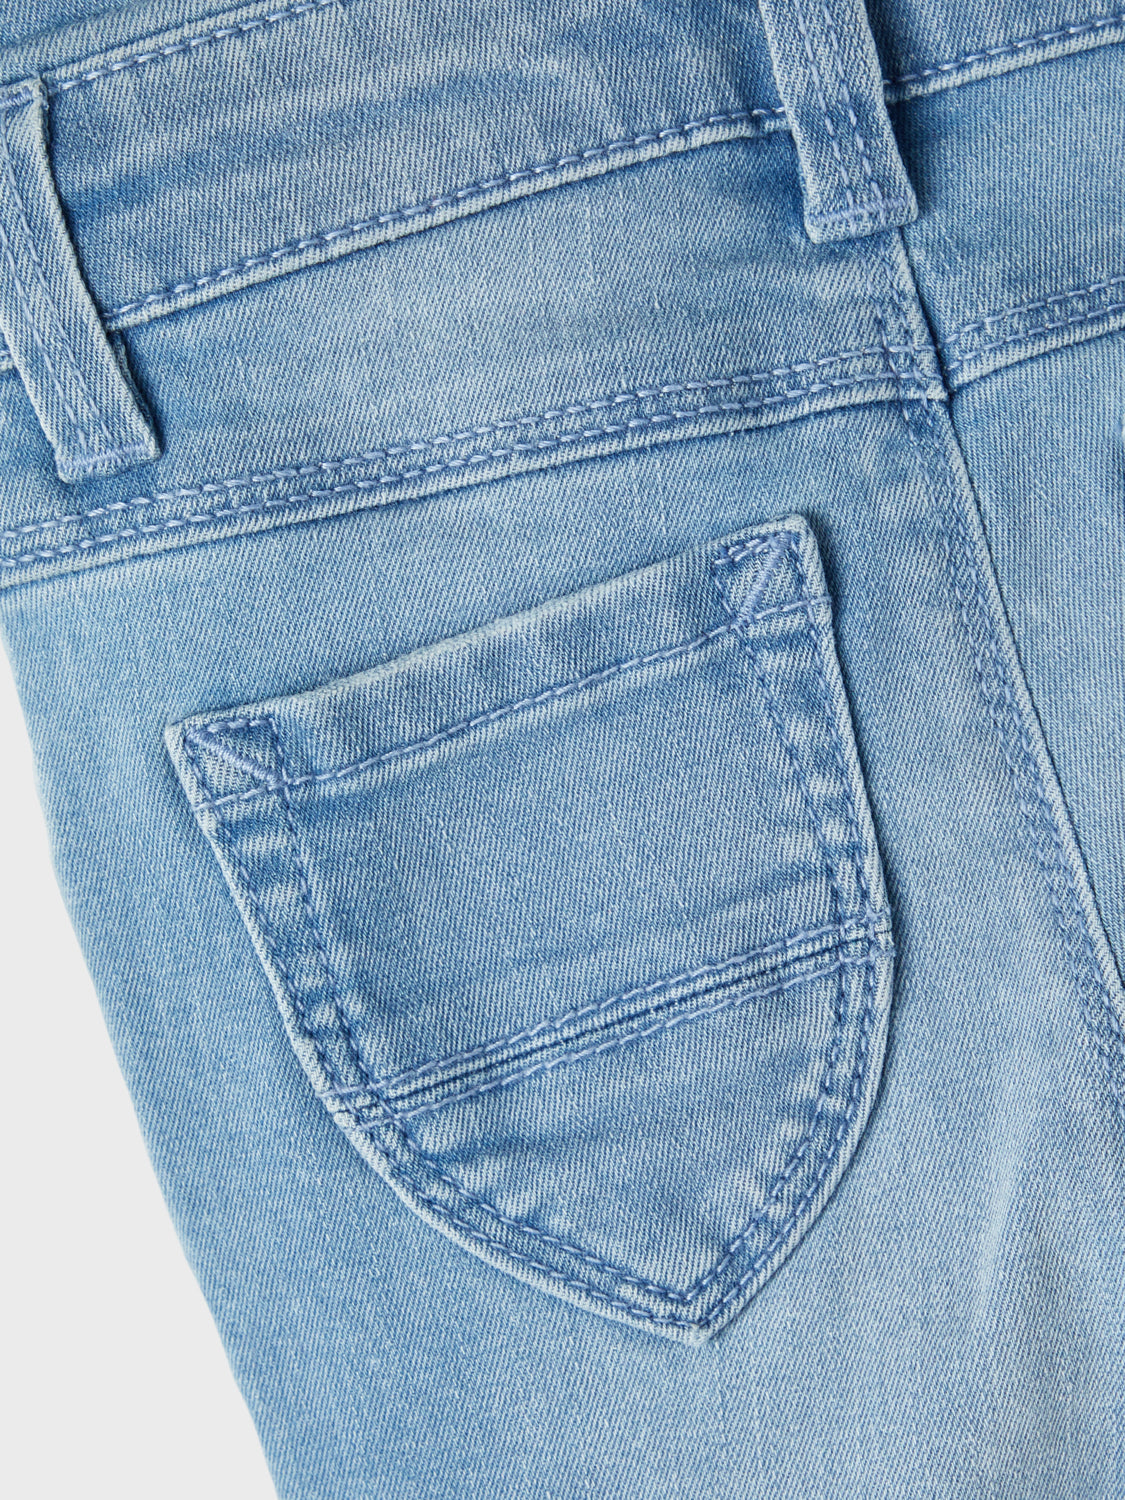 NMFPOLLY Jeans - Light Blue Denim